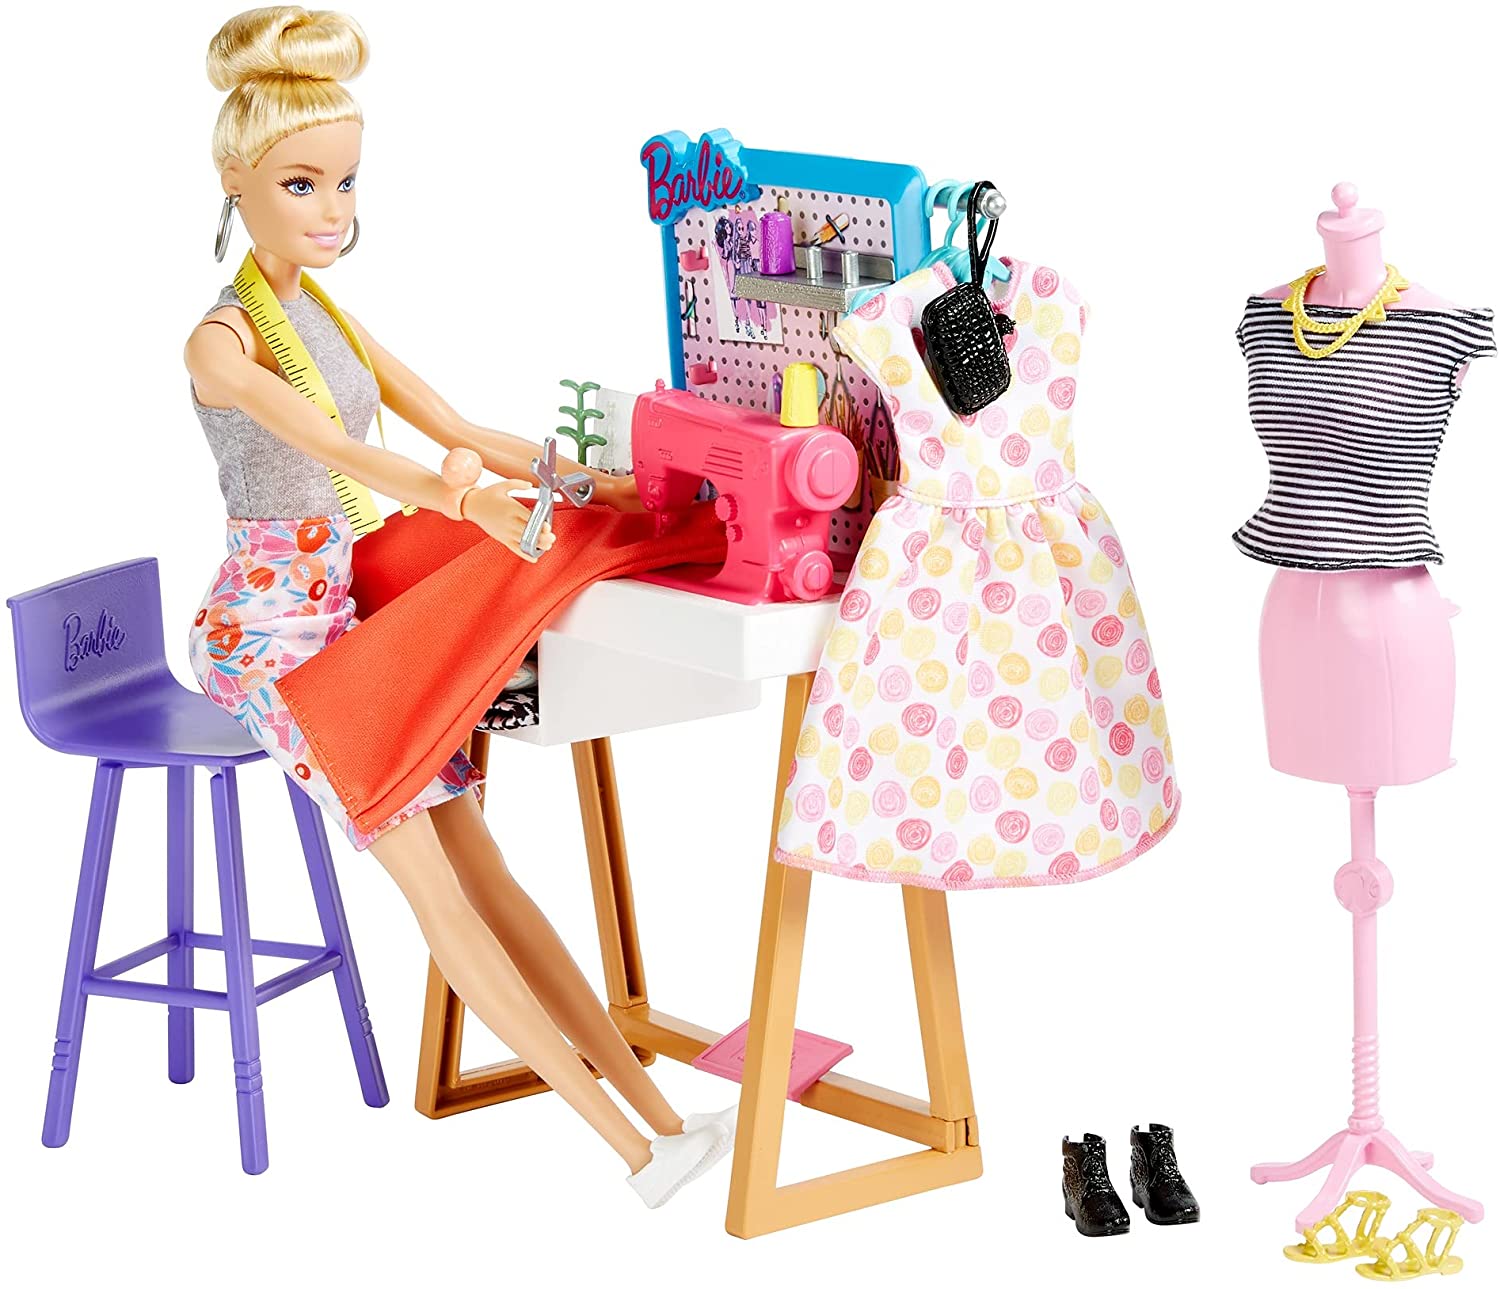 Barbie Fashion Design Maker Doll | vlr.eng.br